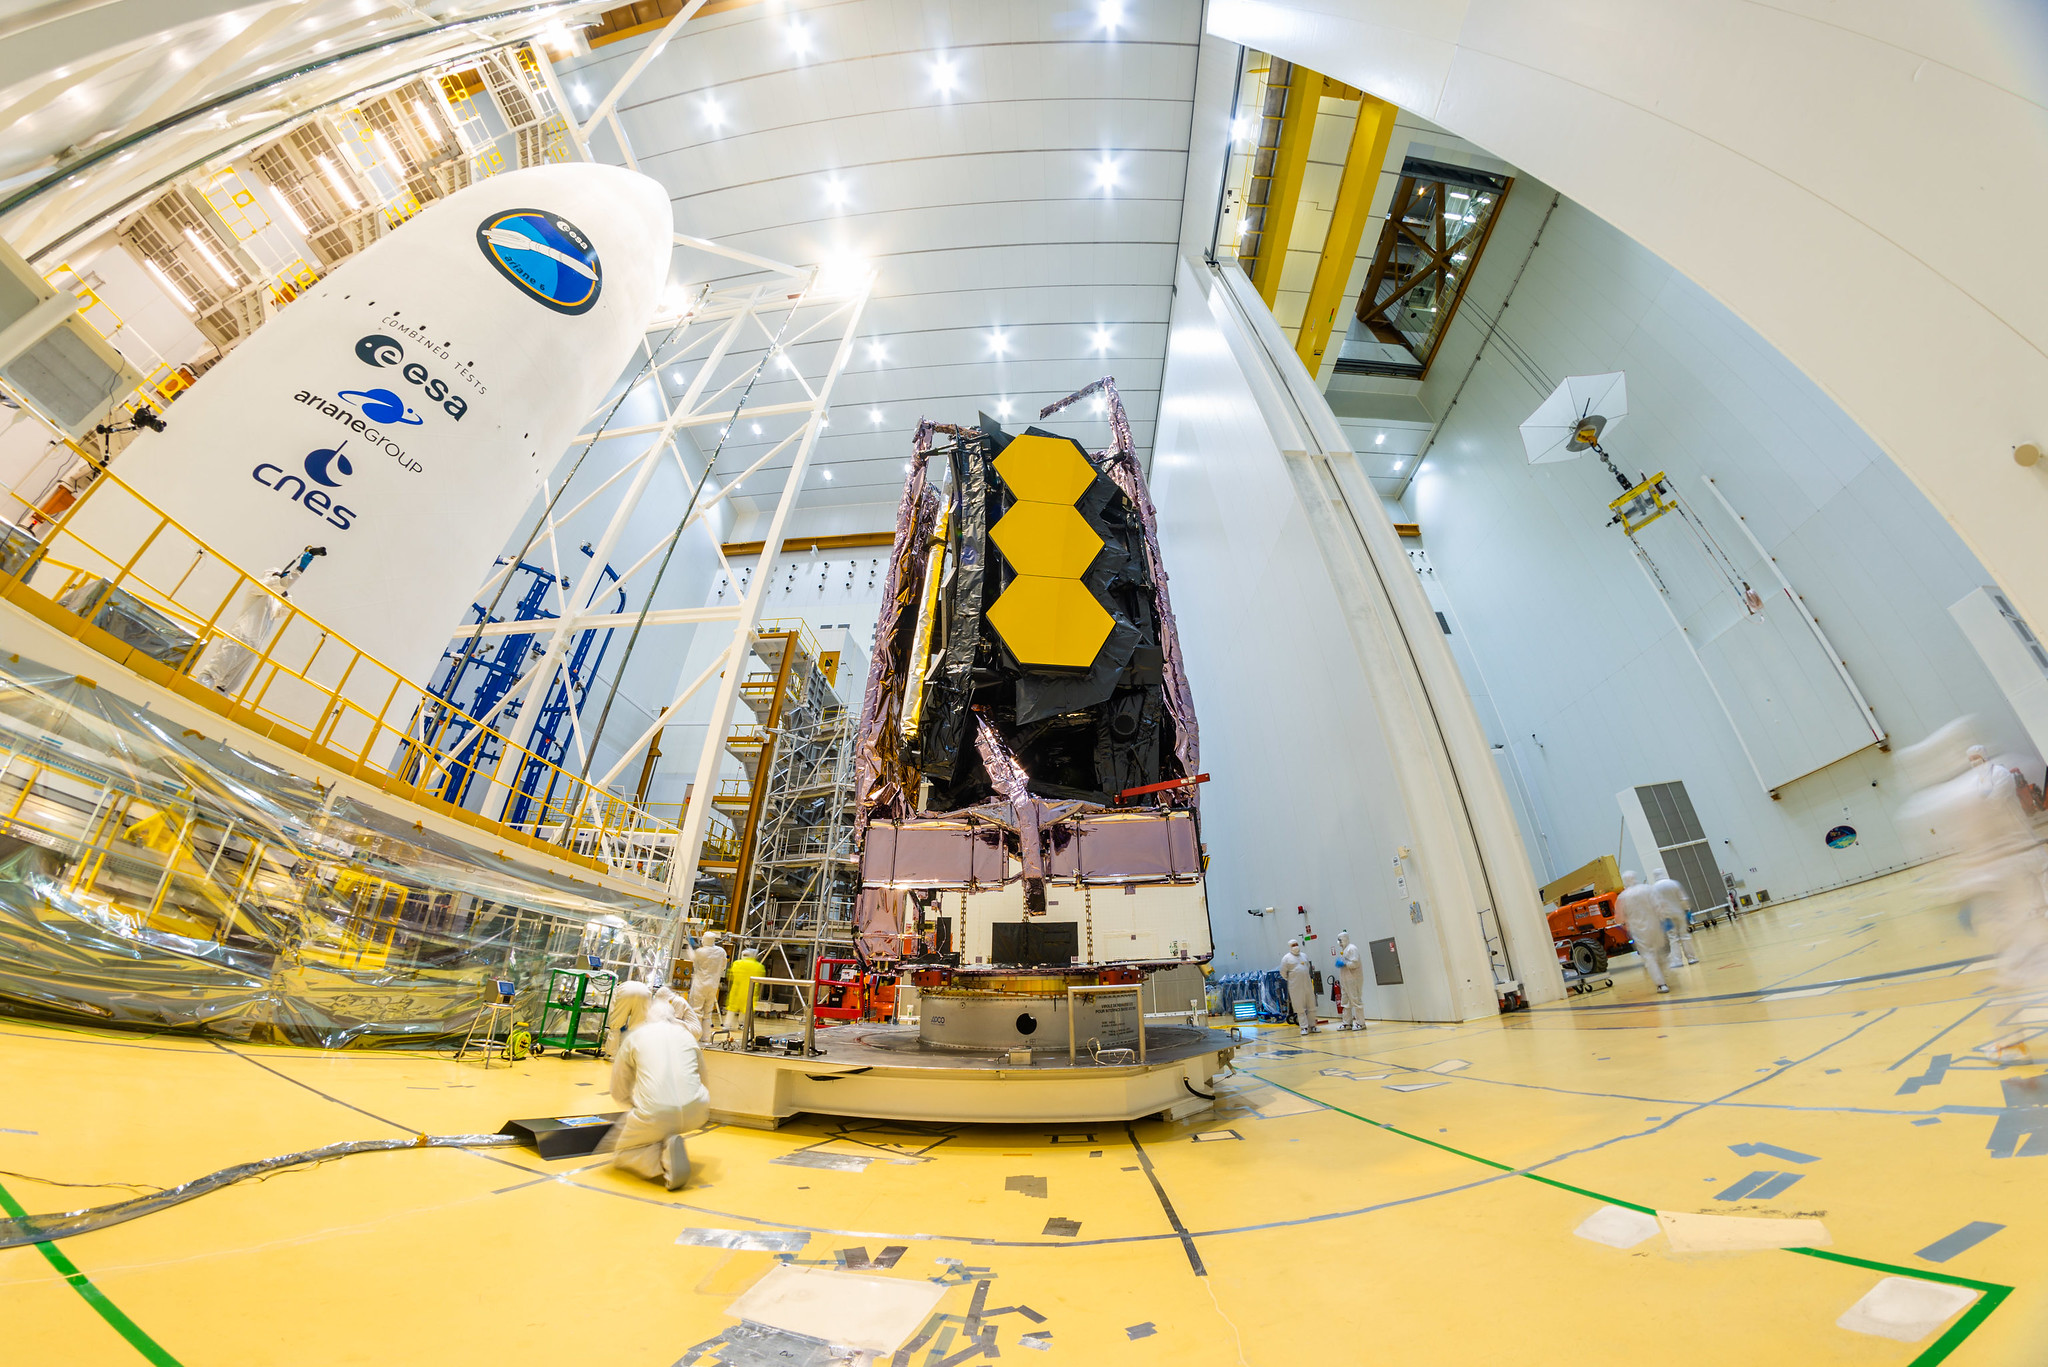 W sobotę, 11 grudnia, Kosmiczny Teleskop Jamesa Webba został zabezpieczony na szczycie rakiety Ariane 5, która wystrzeli go w kosmos z Europejskiego Portu Kosmicznego w Gujanie Francuskiej.